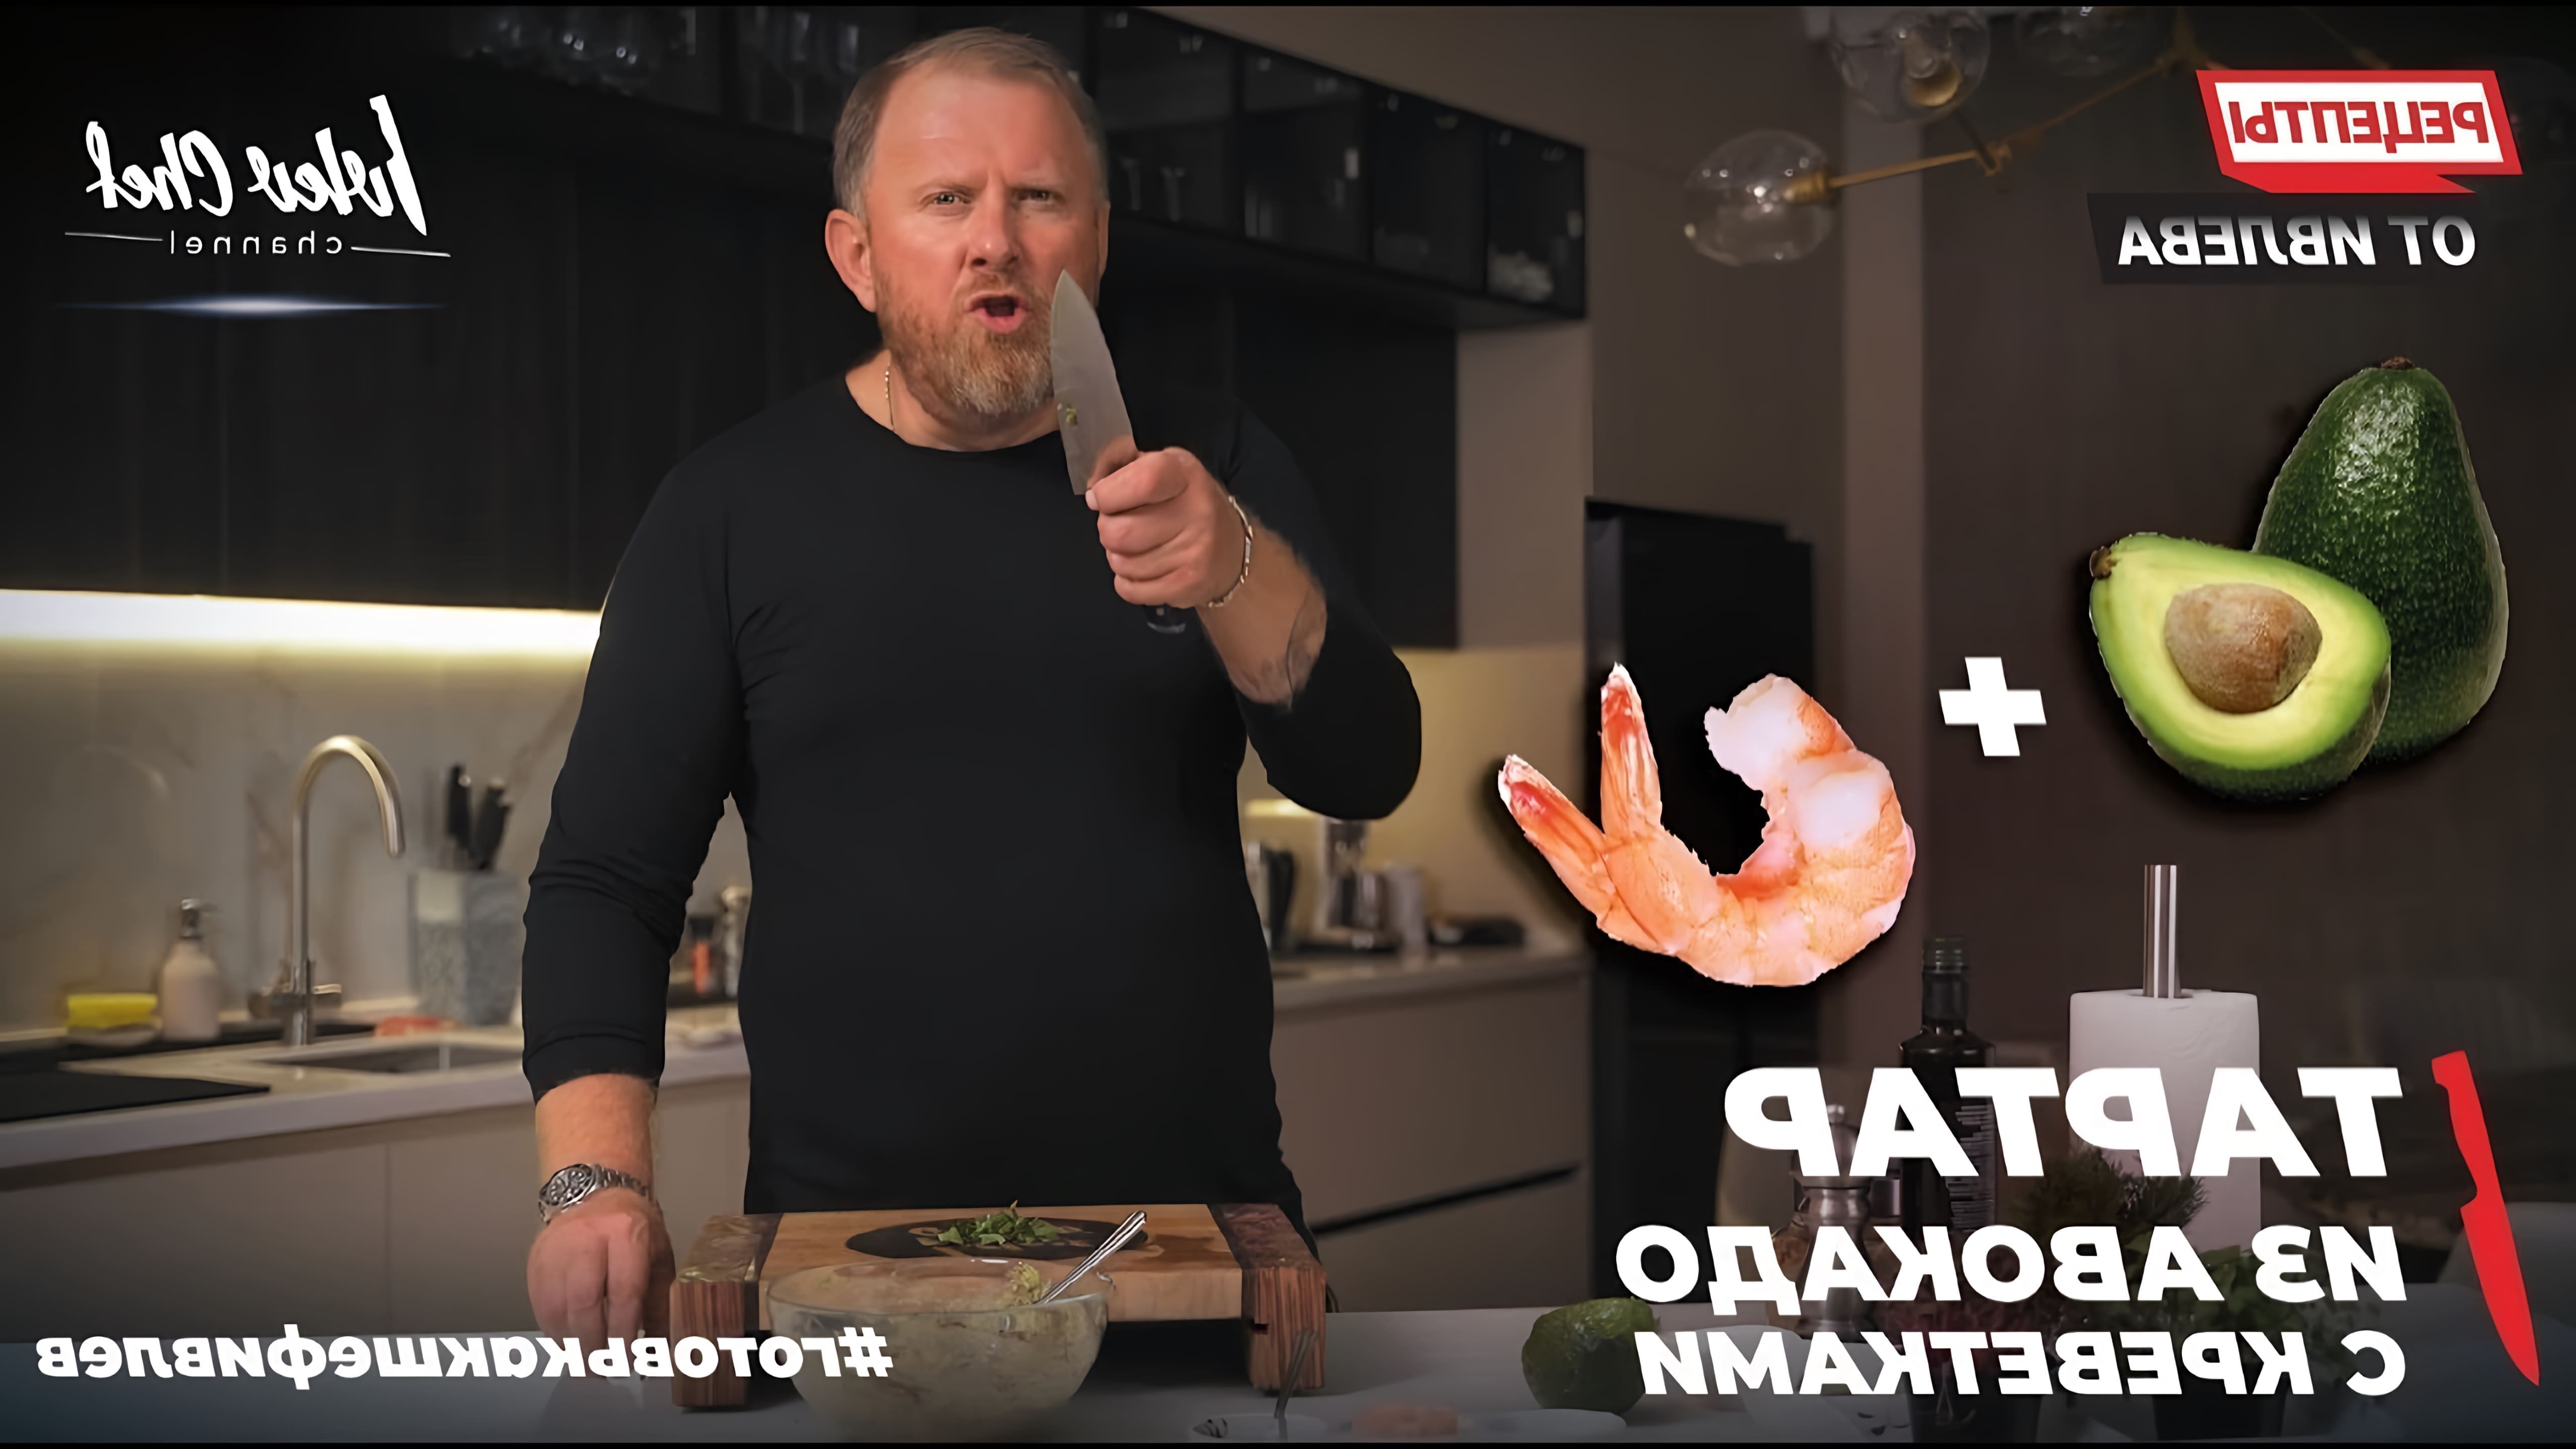 В этом видео демонстрируется рецепт тартара из авокадо с креветками